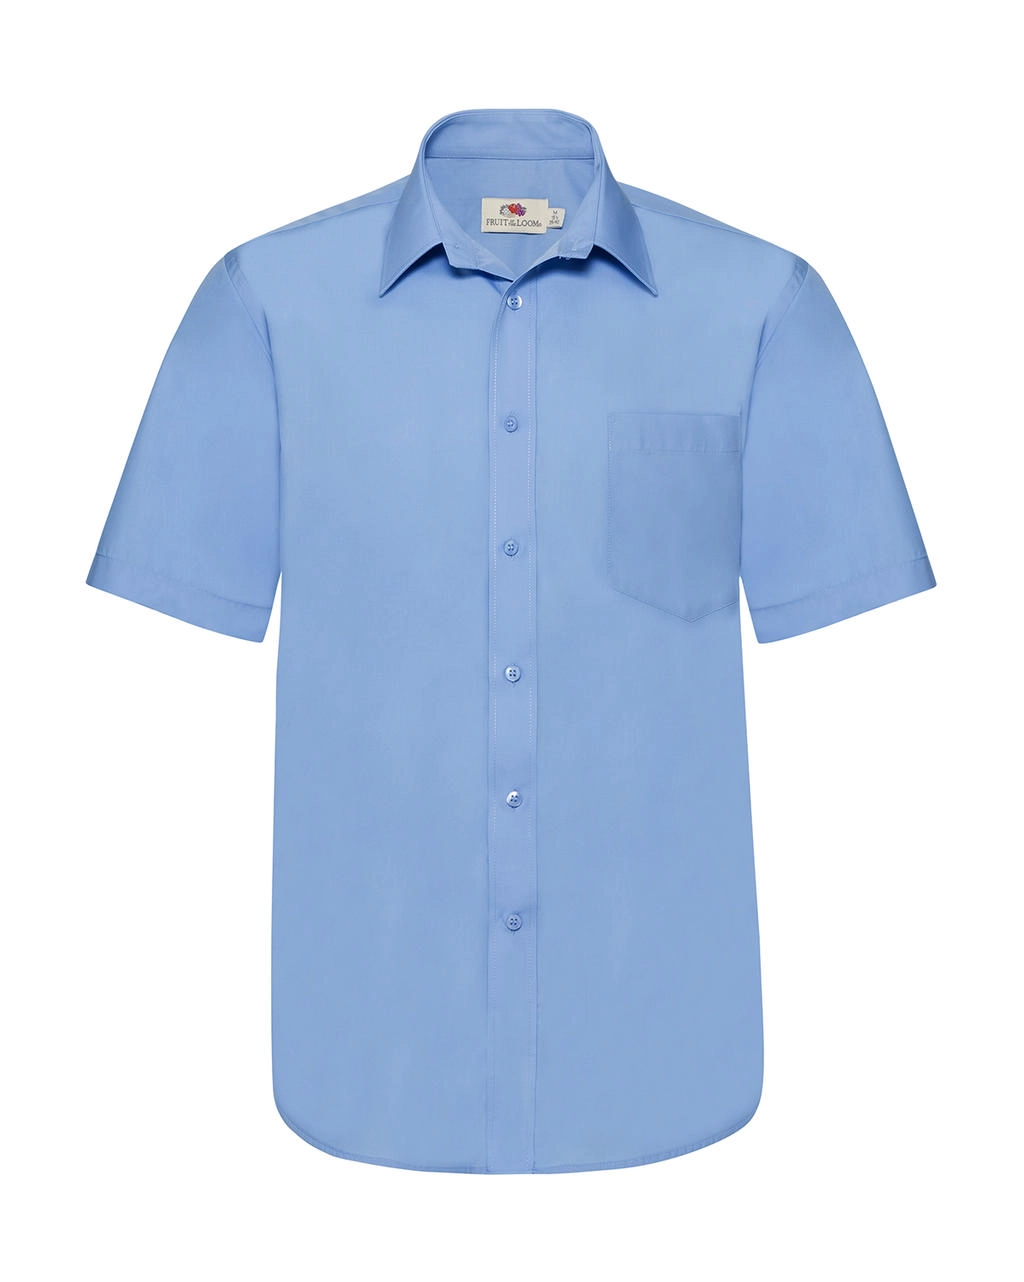 Poplin Shirt zum Besticken und Bedrucken in der Farbe Mid Blue mit Ihren Logo, Schriftzug oder Motiv.